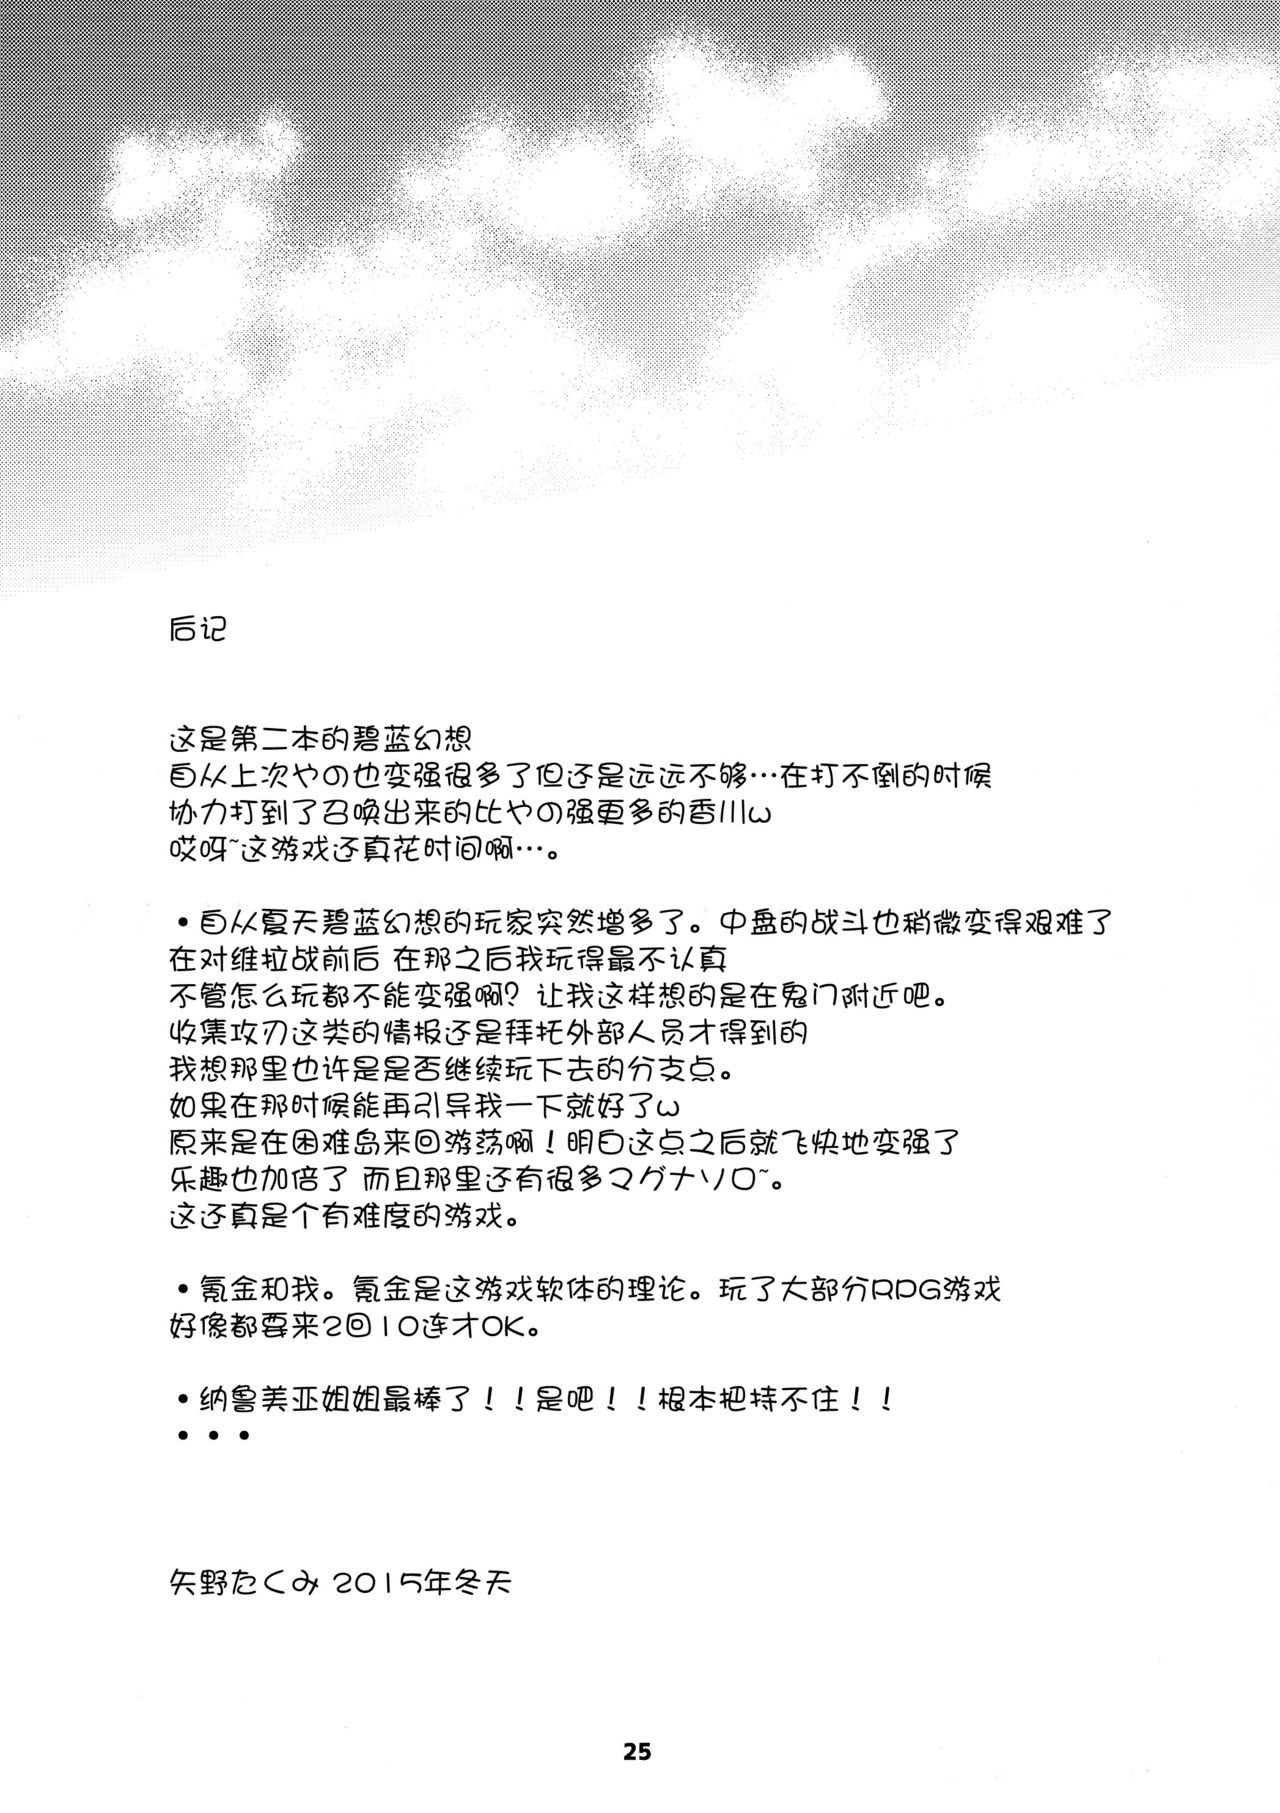 (C89) [Sukapon-Do (Kagawa Tomonobu, Yano Takumi)] GURABURU de PON! 2 (Granblue Fantasy) [Chinese] [脸肿汉化组] (C89) [スカポン堂 (香川友信、矢野たくみ)] グラブルでポン! 2 (グランブルーファンタジー) [中国翻訳]